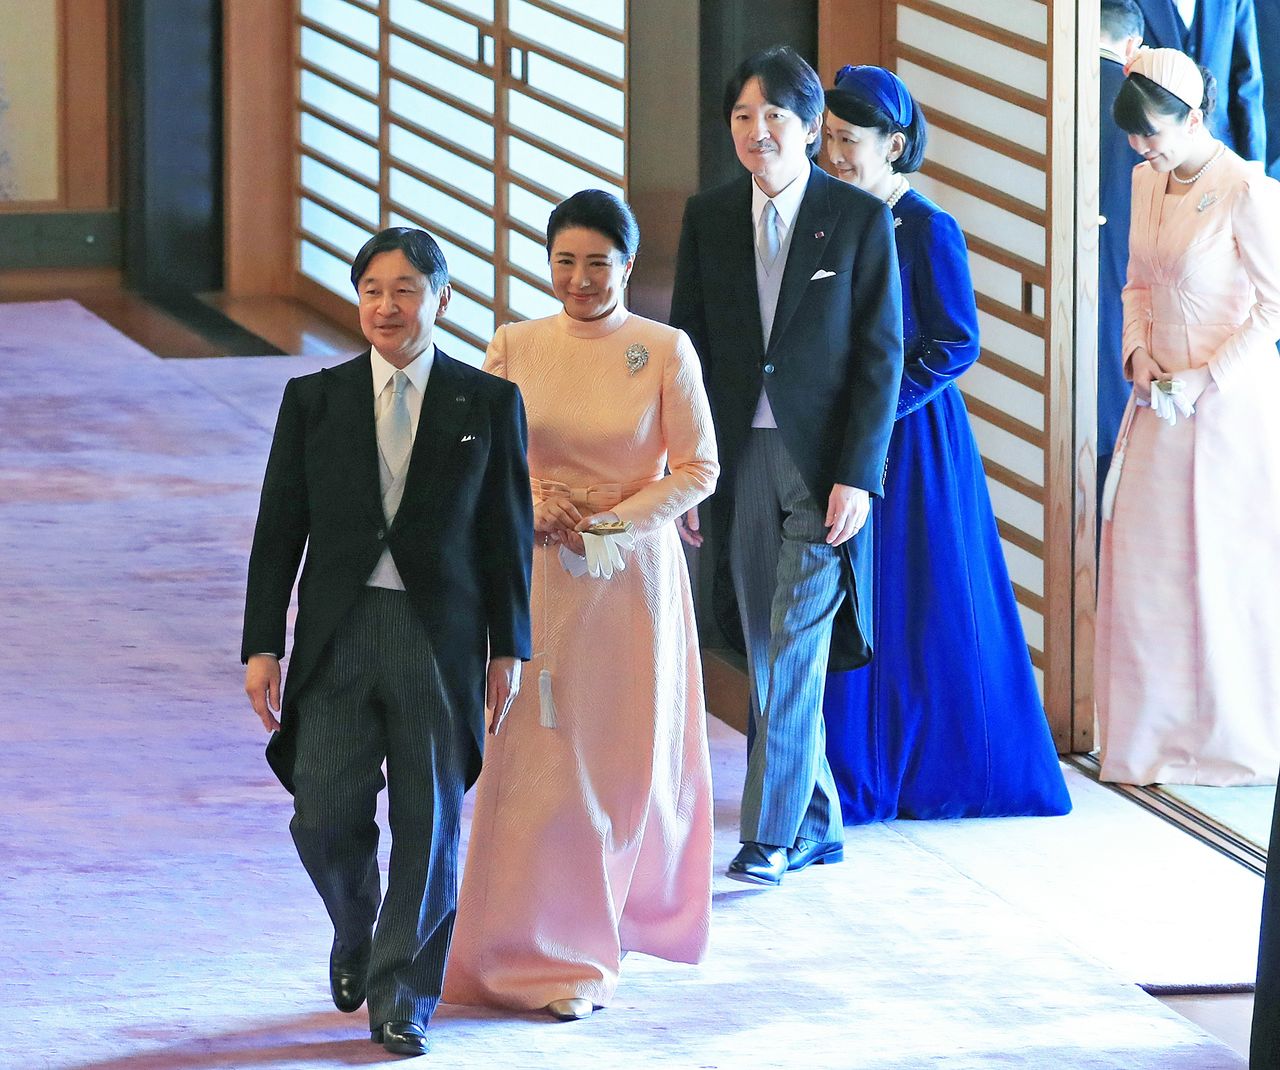 L'empereur Naruhito, suivi par l'impératrice Masako, le prince Fumihito et la princesse Kiko lors d'une cérémonie (chakai no gi) pour célébrer l'anniversaire de l'empereur, le 23 février 2020 au palais impérial (Jiji press).